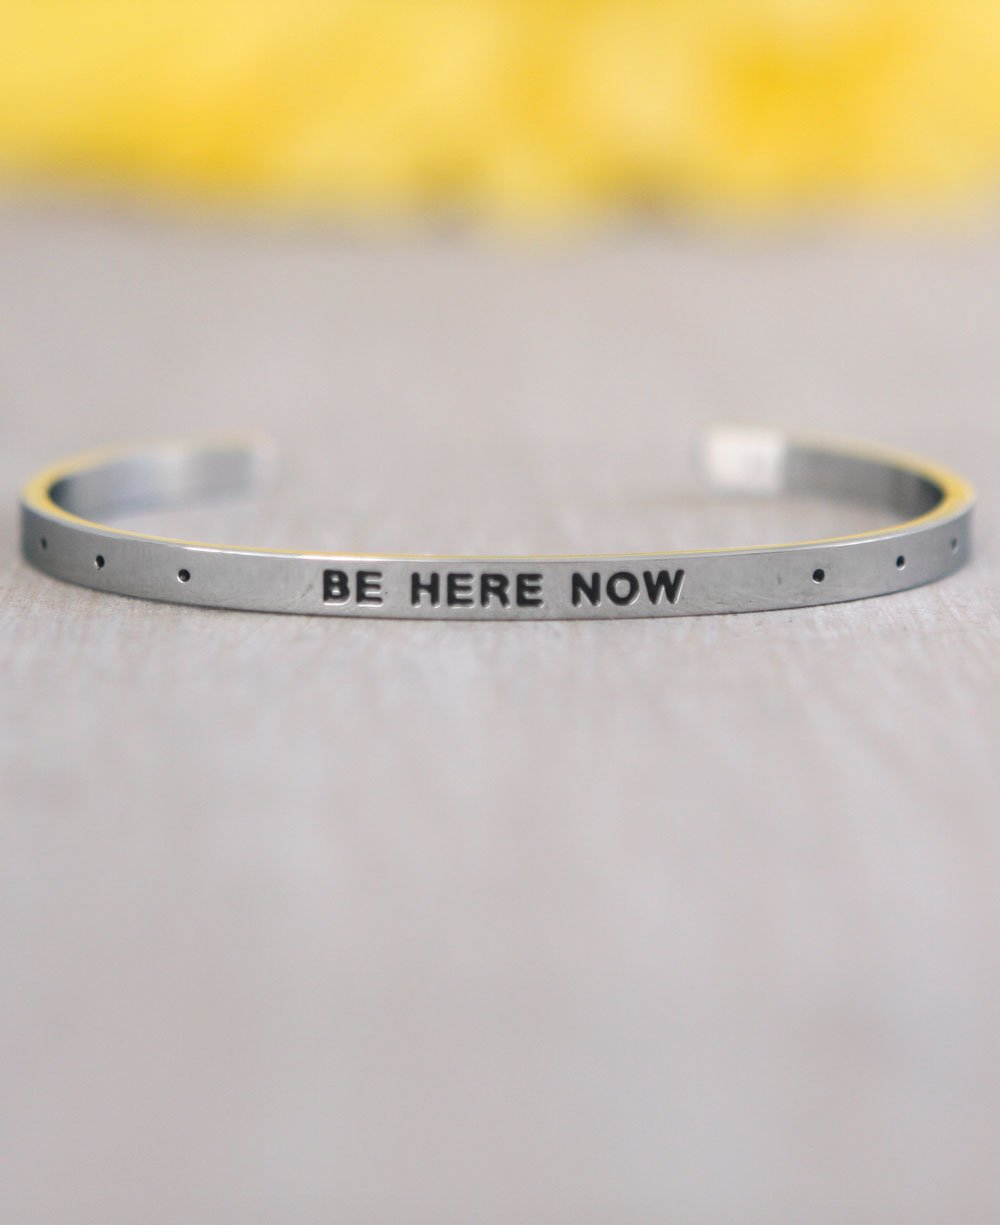 Mindful Meditational Cuff Bracelet, Be Here Now - Bracelets